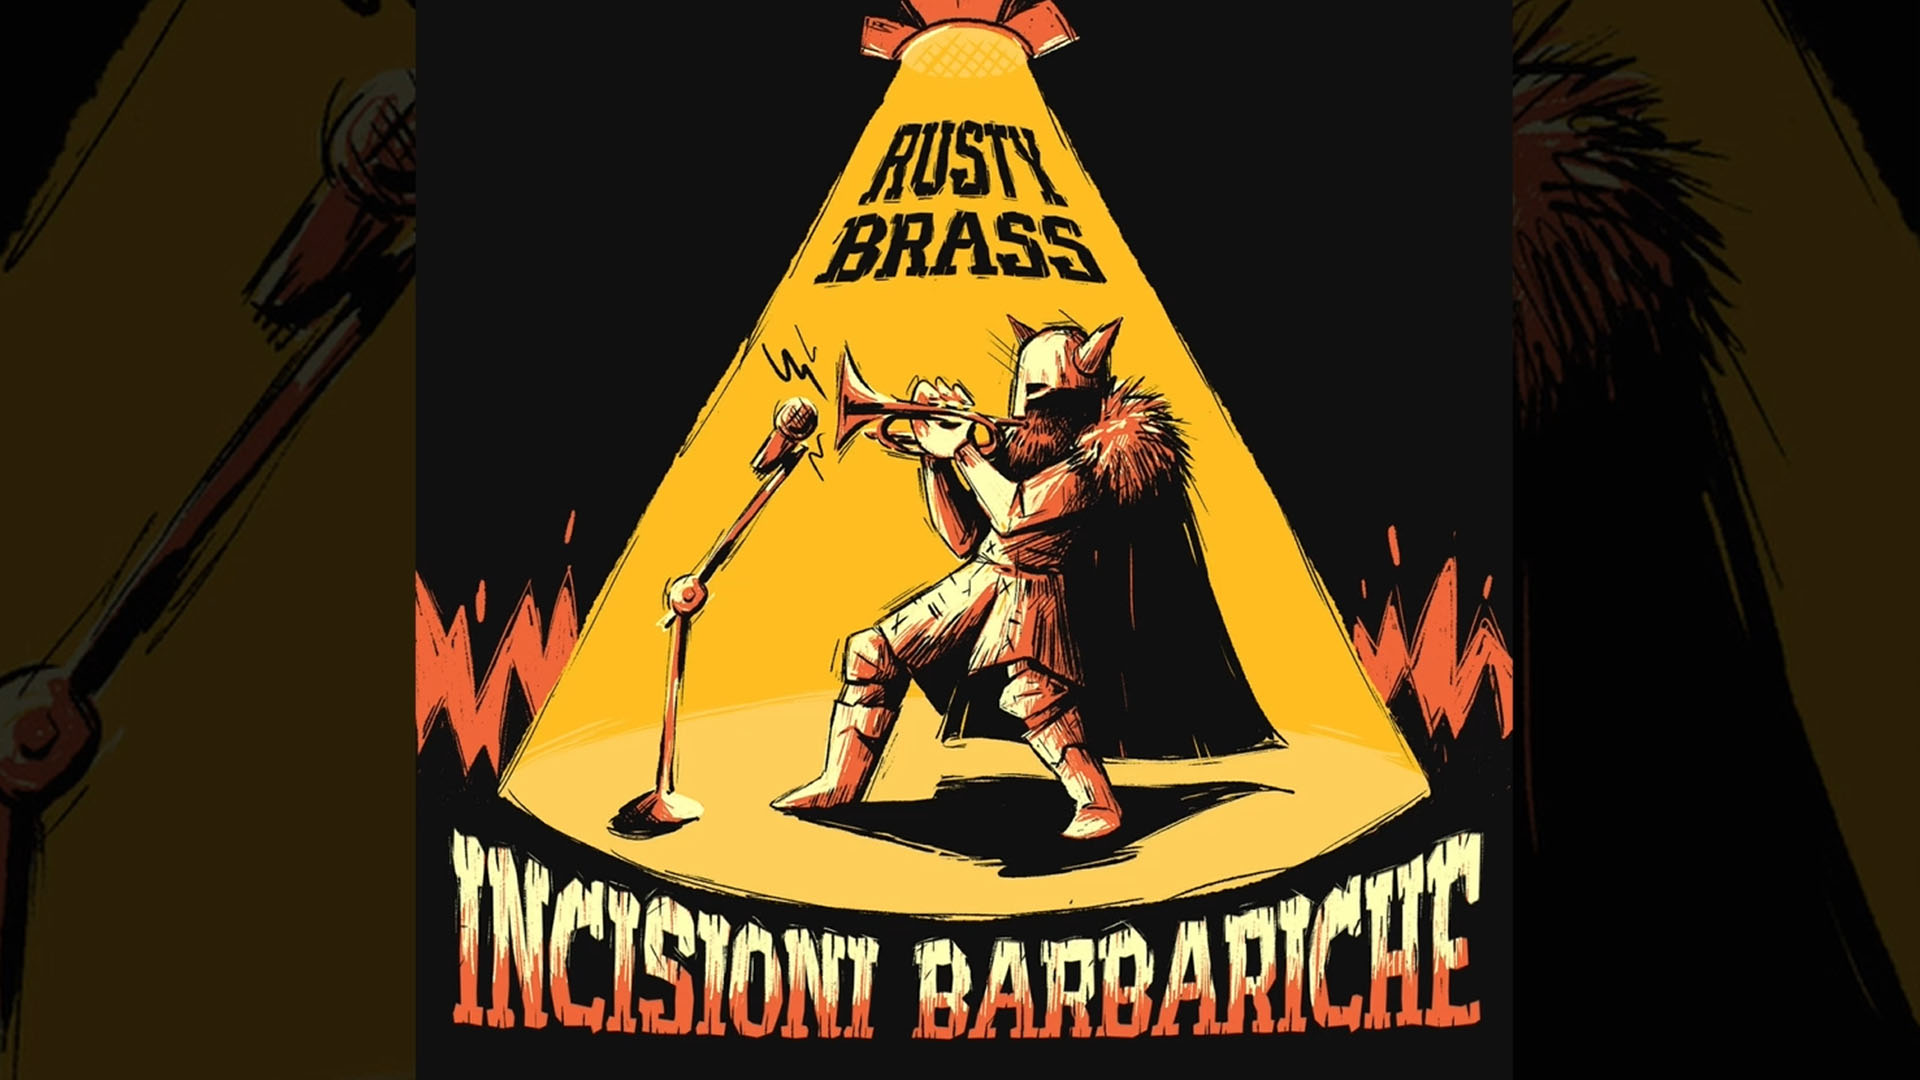 Le Incisioni Barbariche dei Rusty Brass